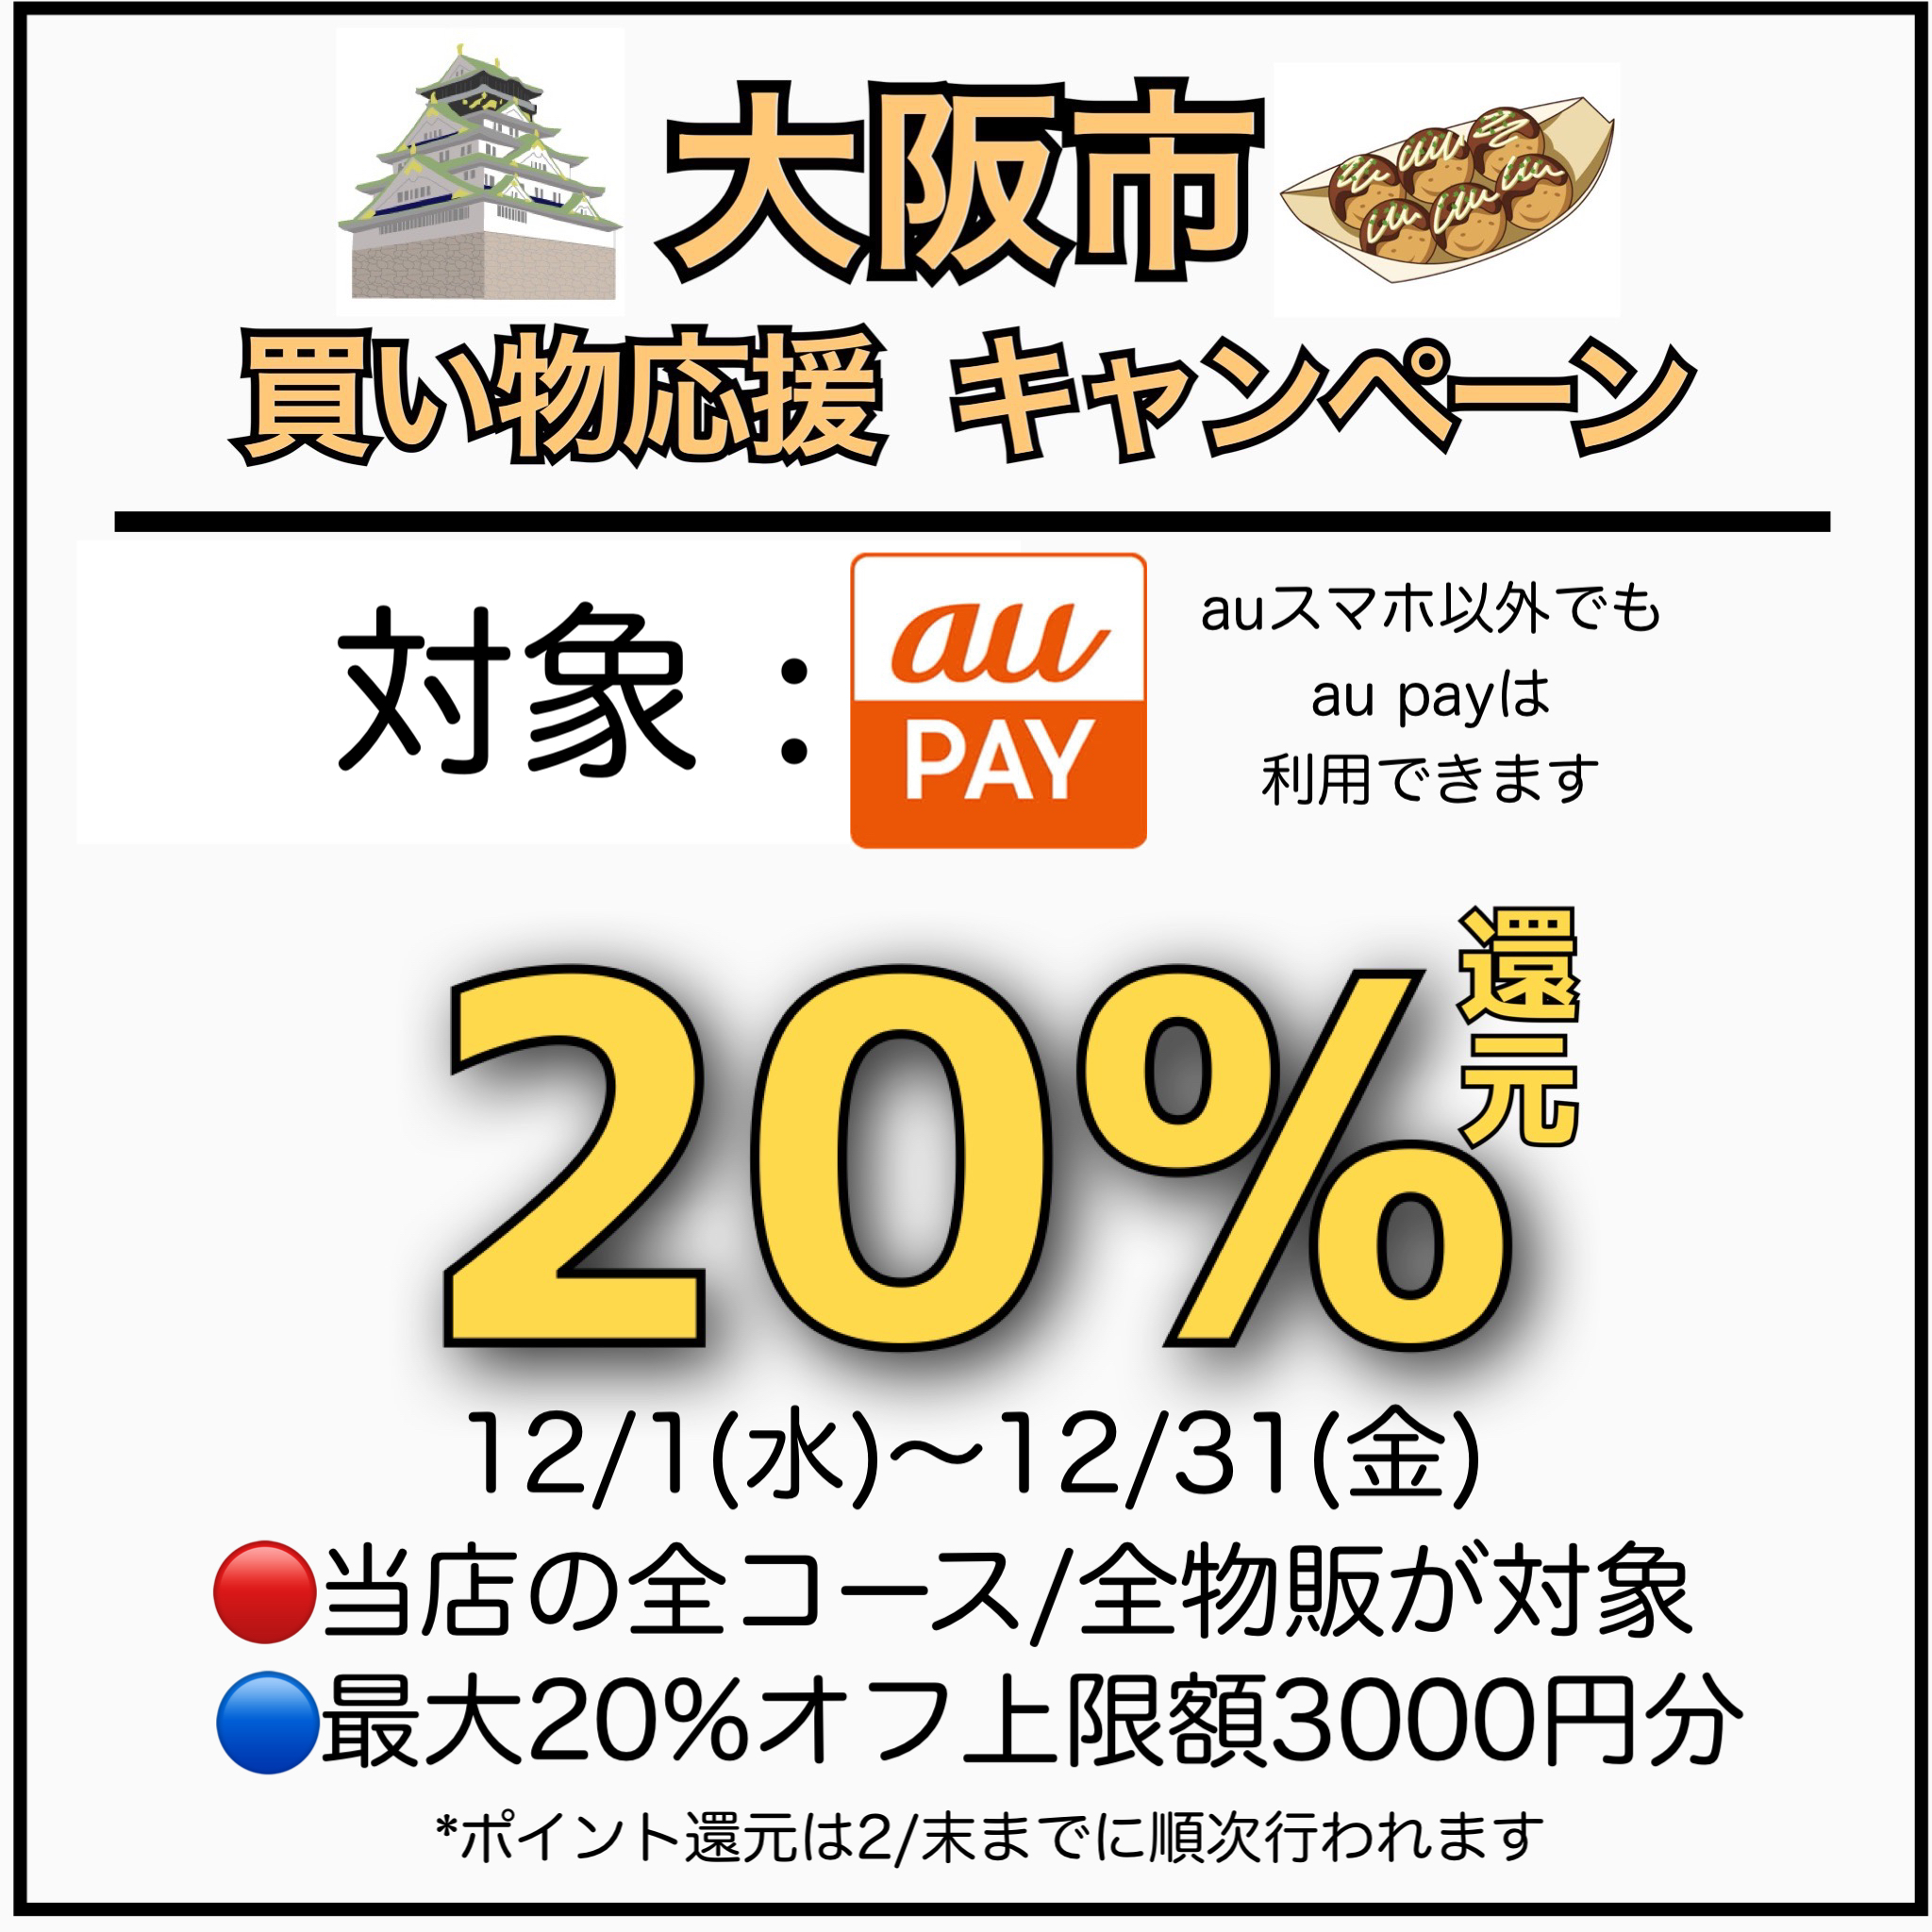 ●大阪● 関西にお越しの際はお立ち寄り下さい!〜12/31までauPAYで20%OFF！